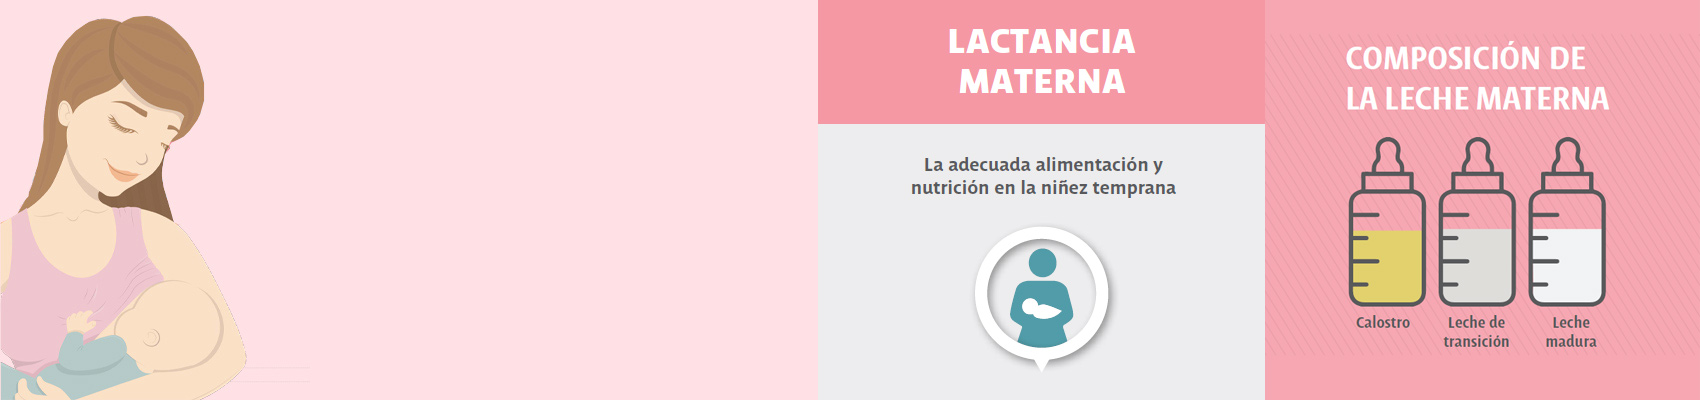 Lactancia materna: Beneficios, tipos de leche y composición